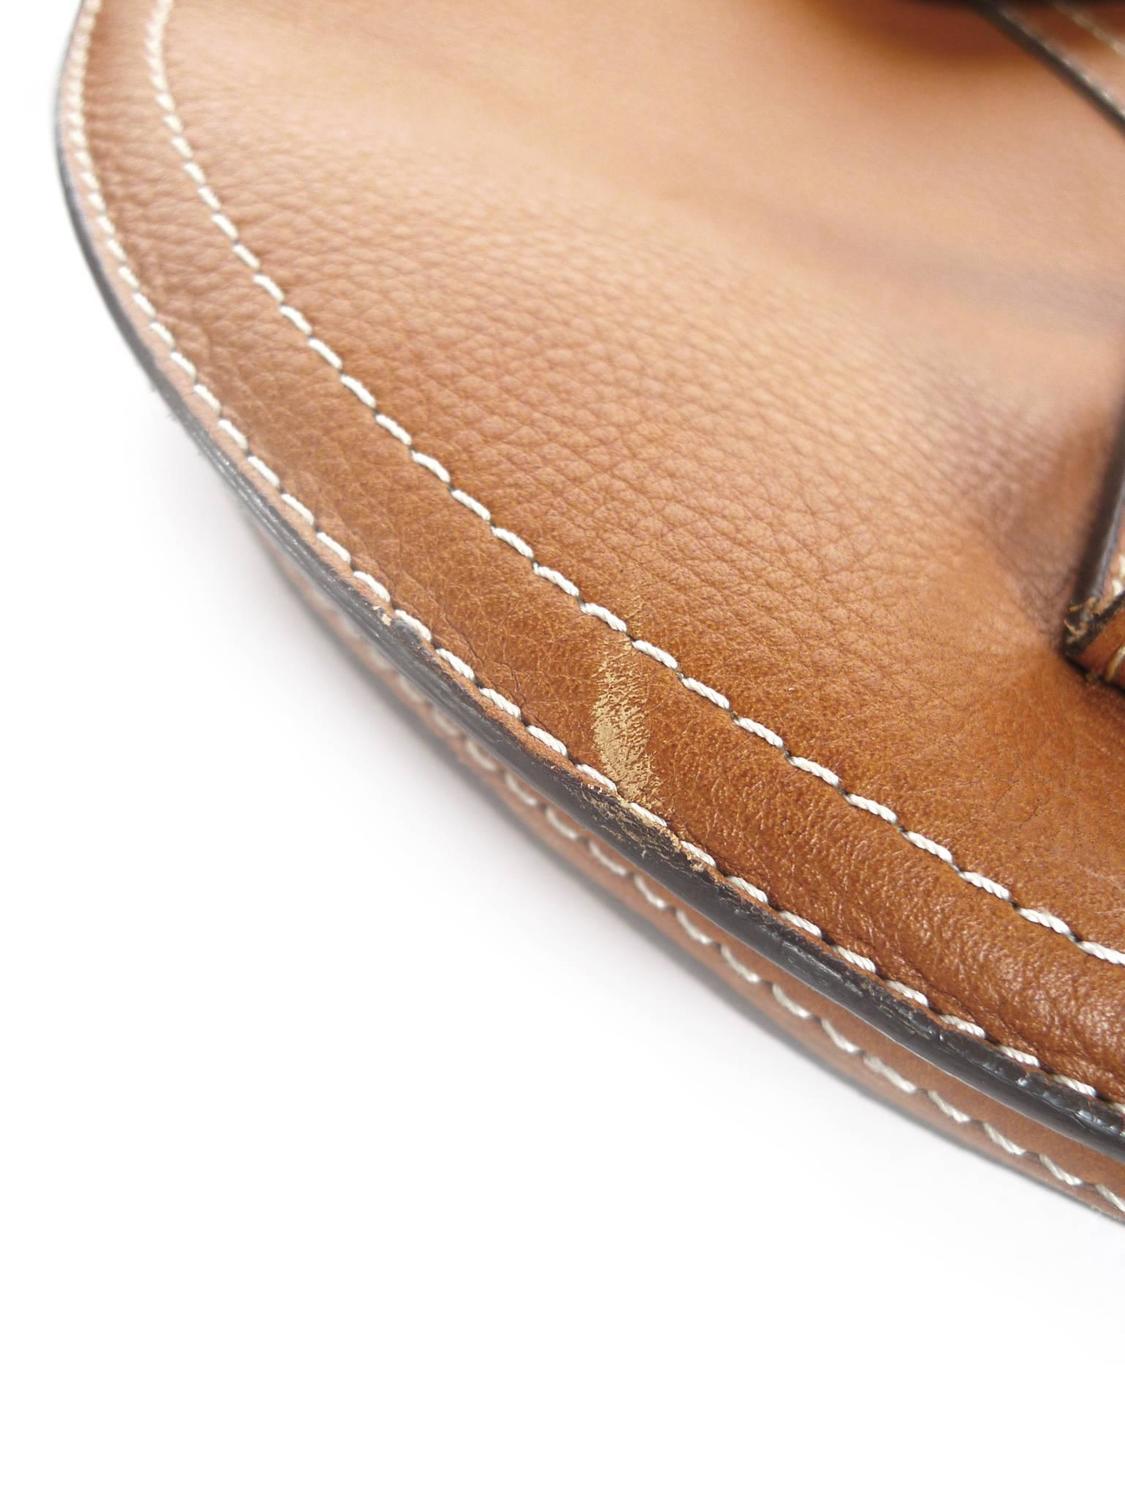 Christian Dior Tan Leather Saddle Bag For Sale at 1stdibs